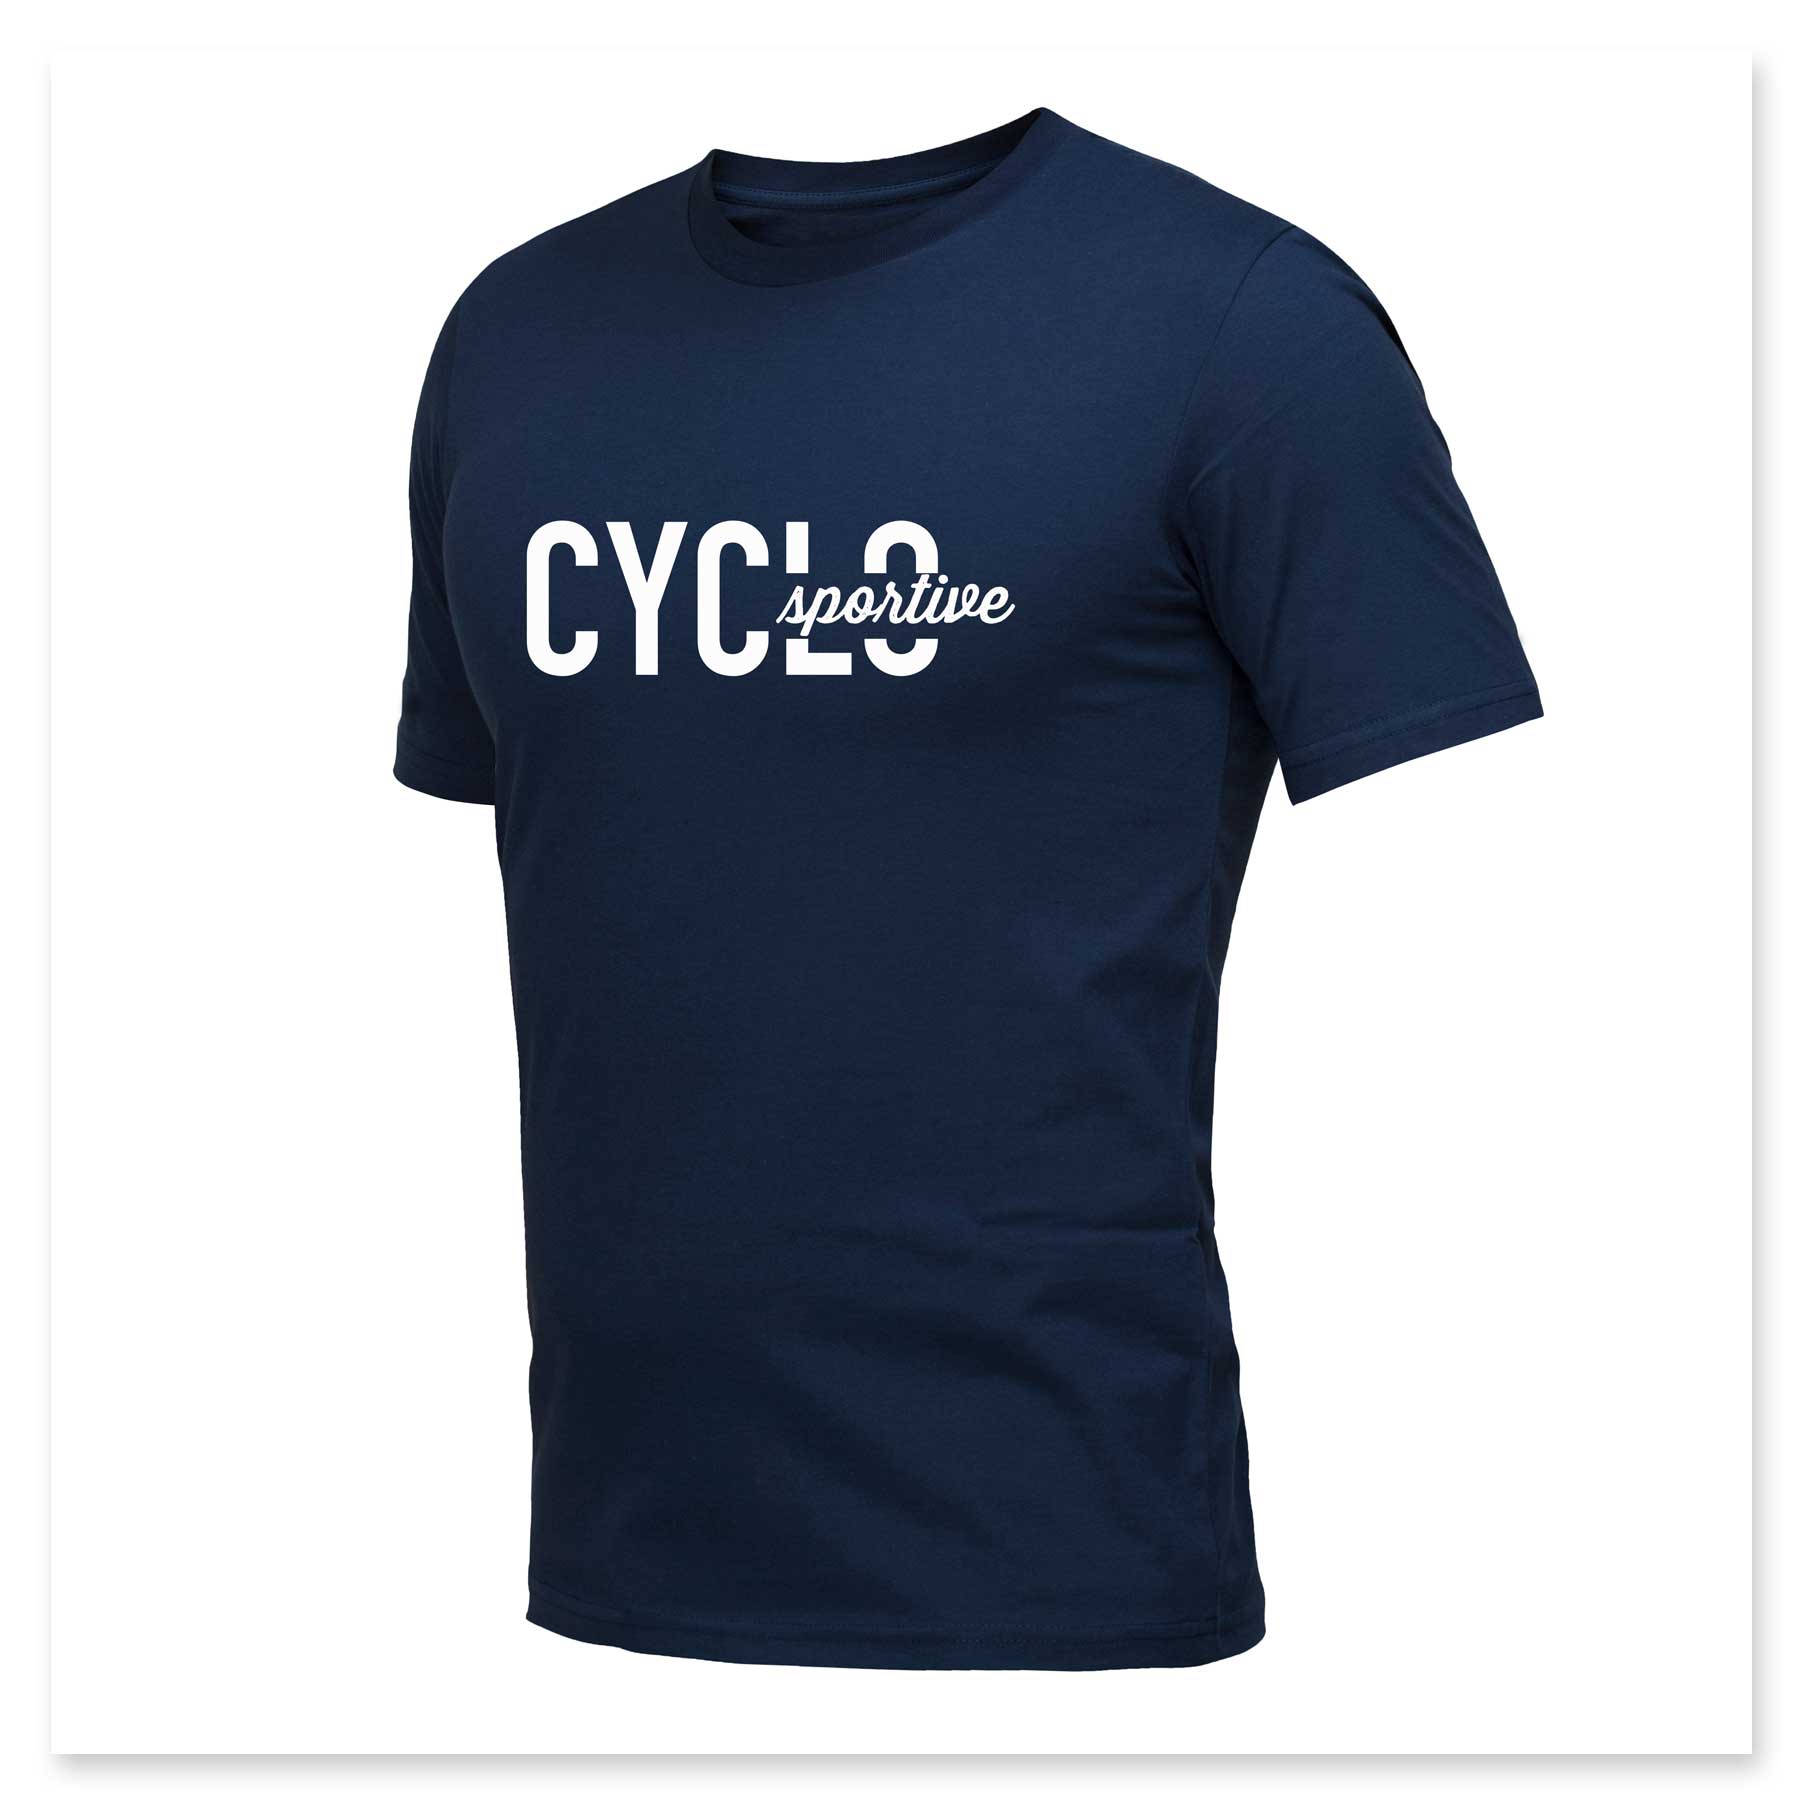 Een blauw t-shirt met het woord cyclus erop